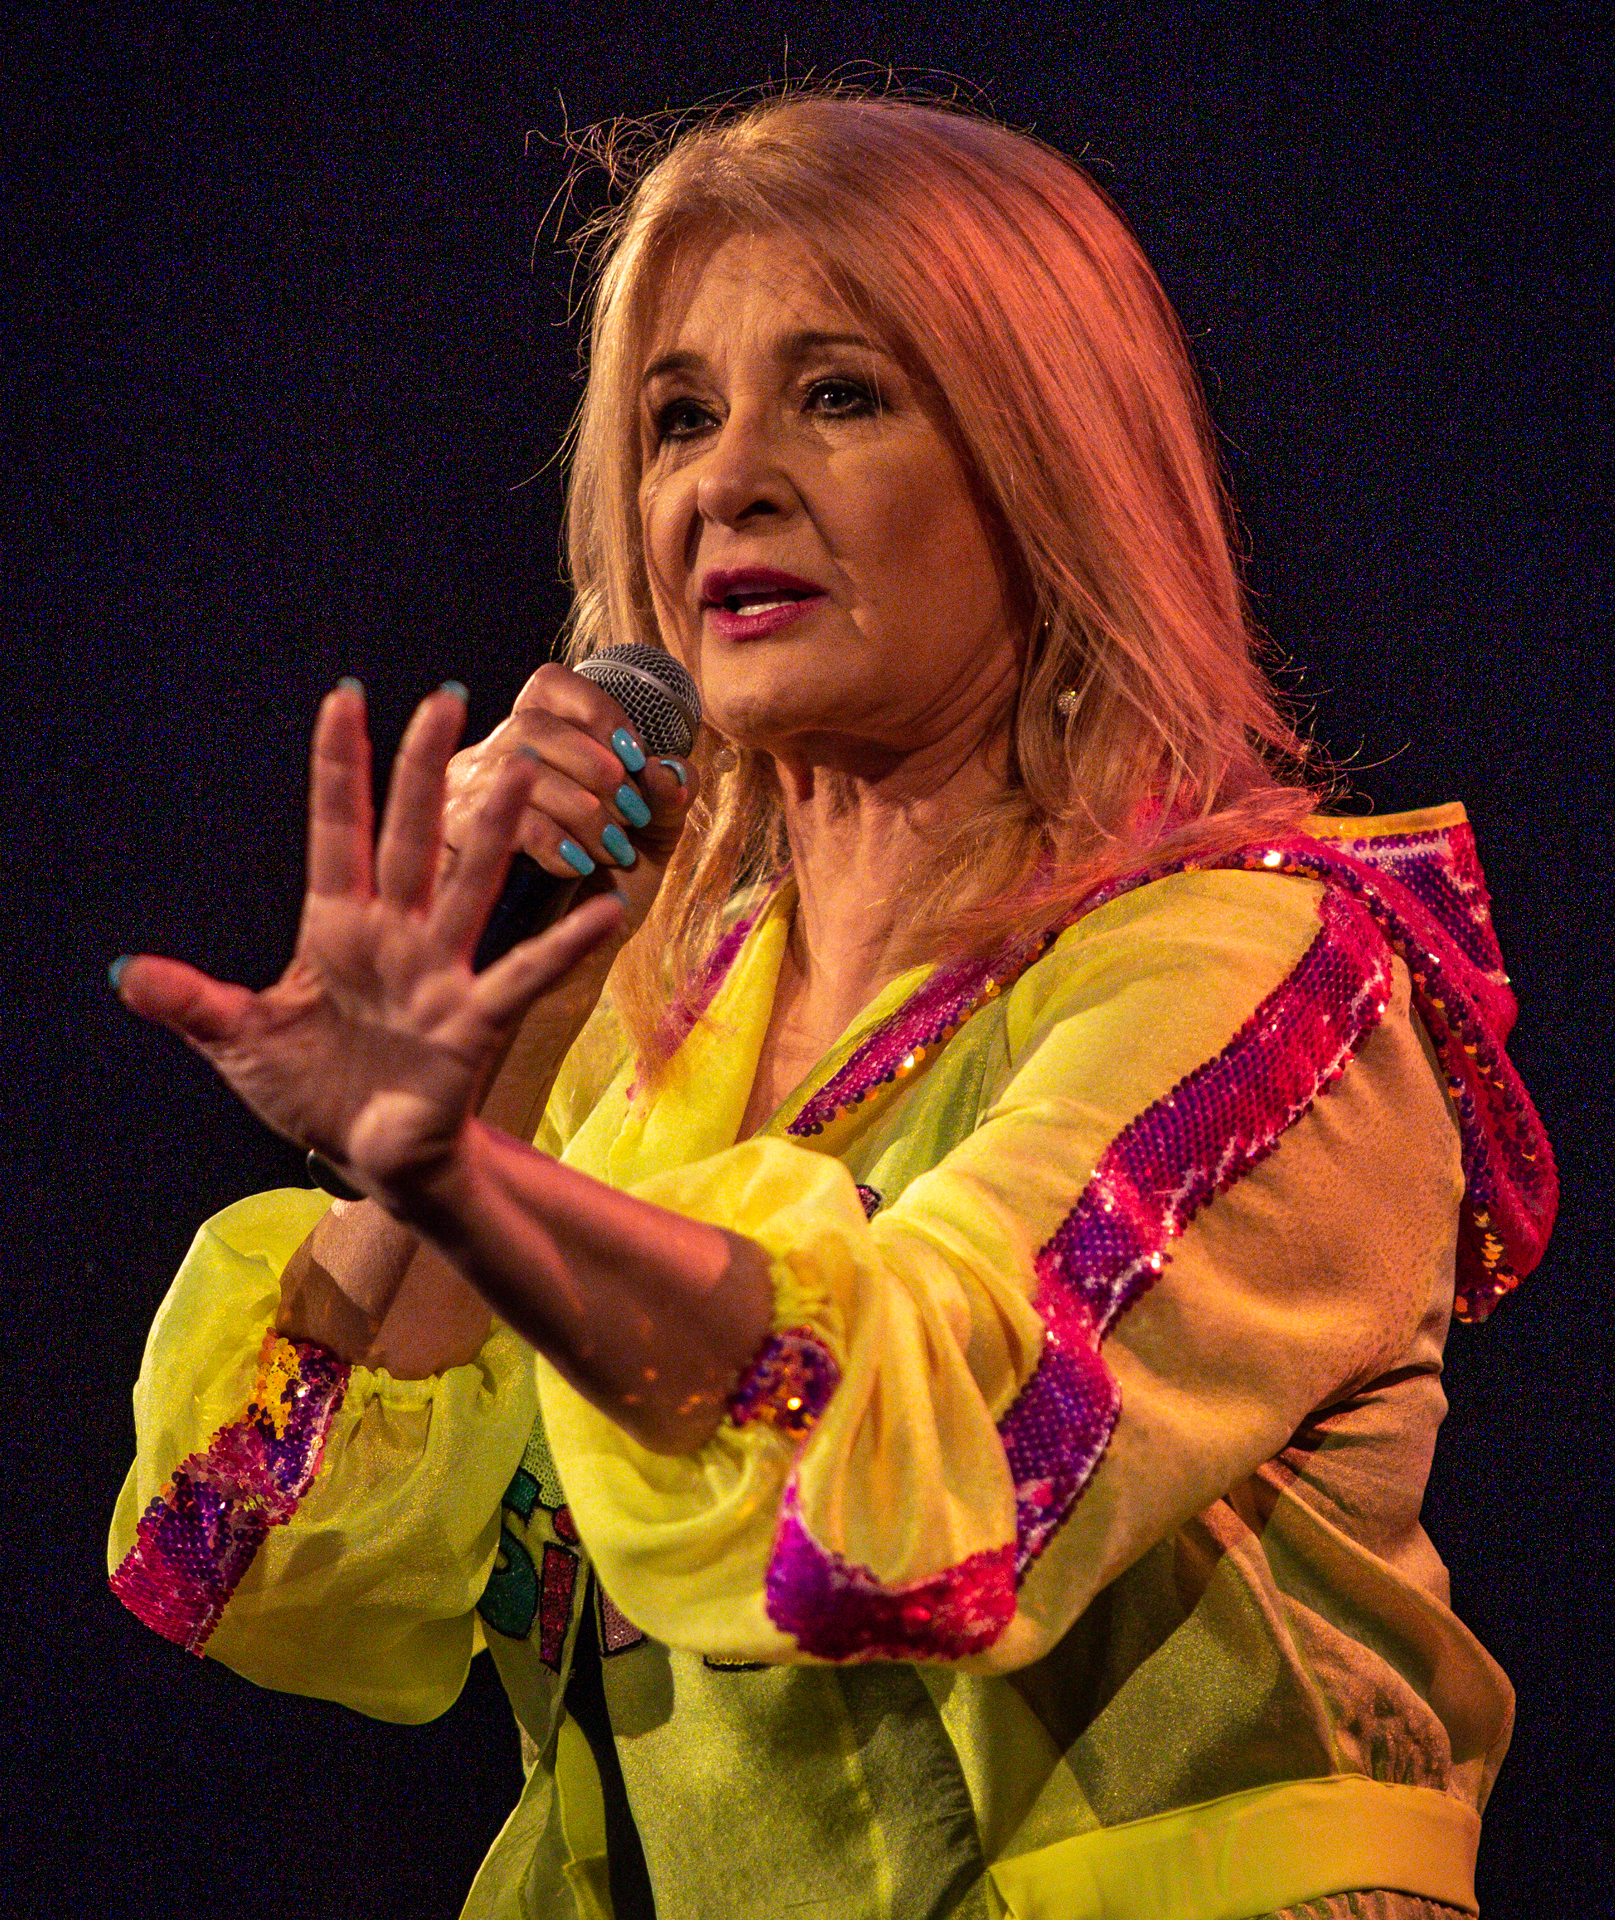 Zdjęcie. Kobieta w żółtej szyfonowej bluzie z kapturem z błyszczącymi różowymi lampasami śpiewa do mikrofonu. Ma proste blond włosy poniżej ramion. To Majka Jeżowska.